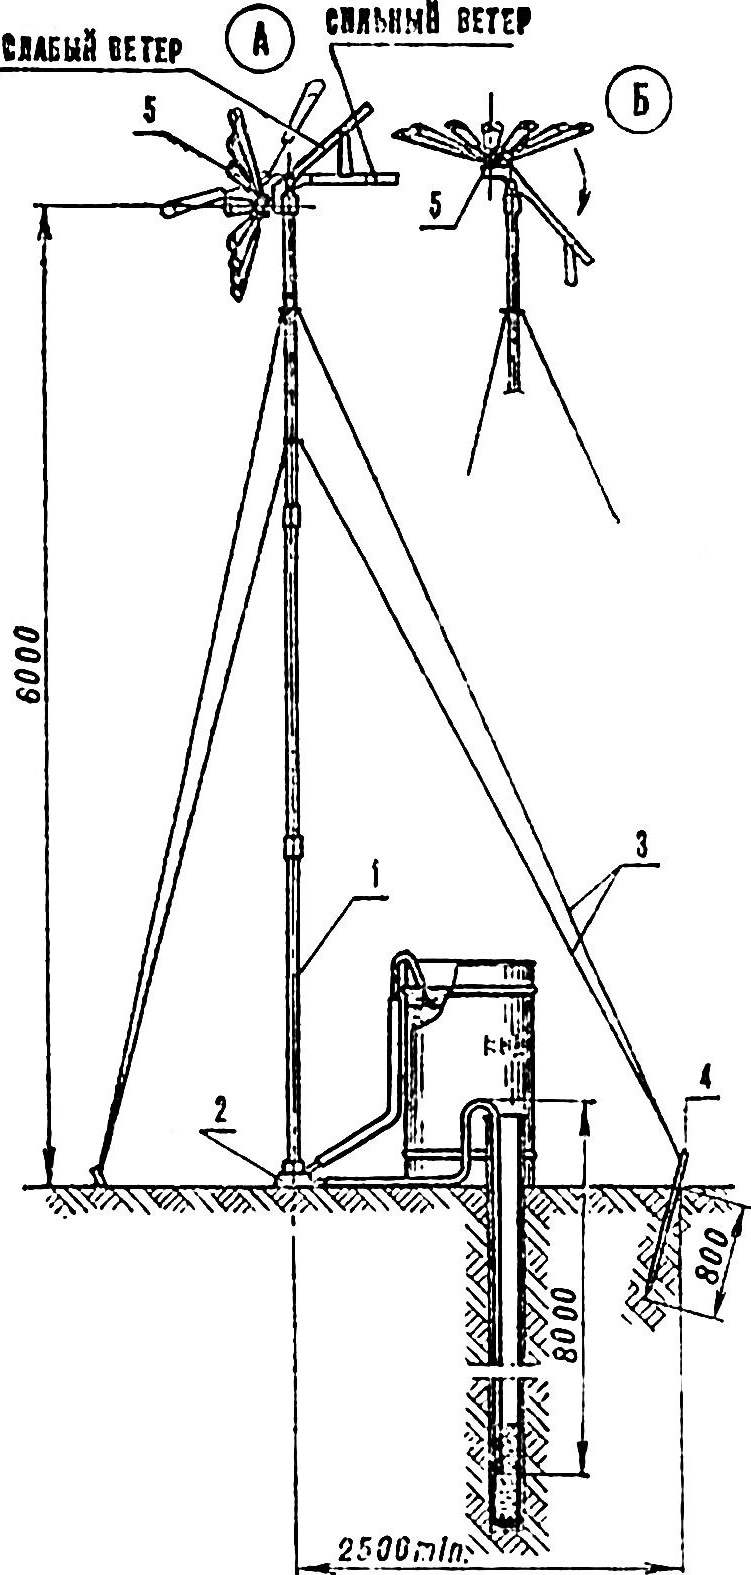 Fig. 1. Wind turbine 